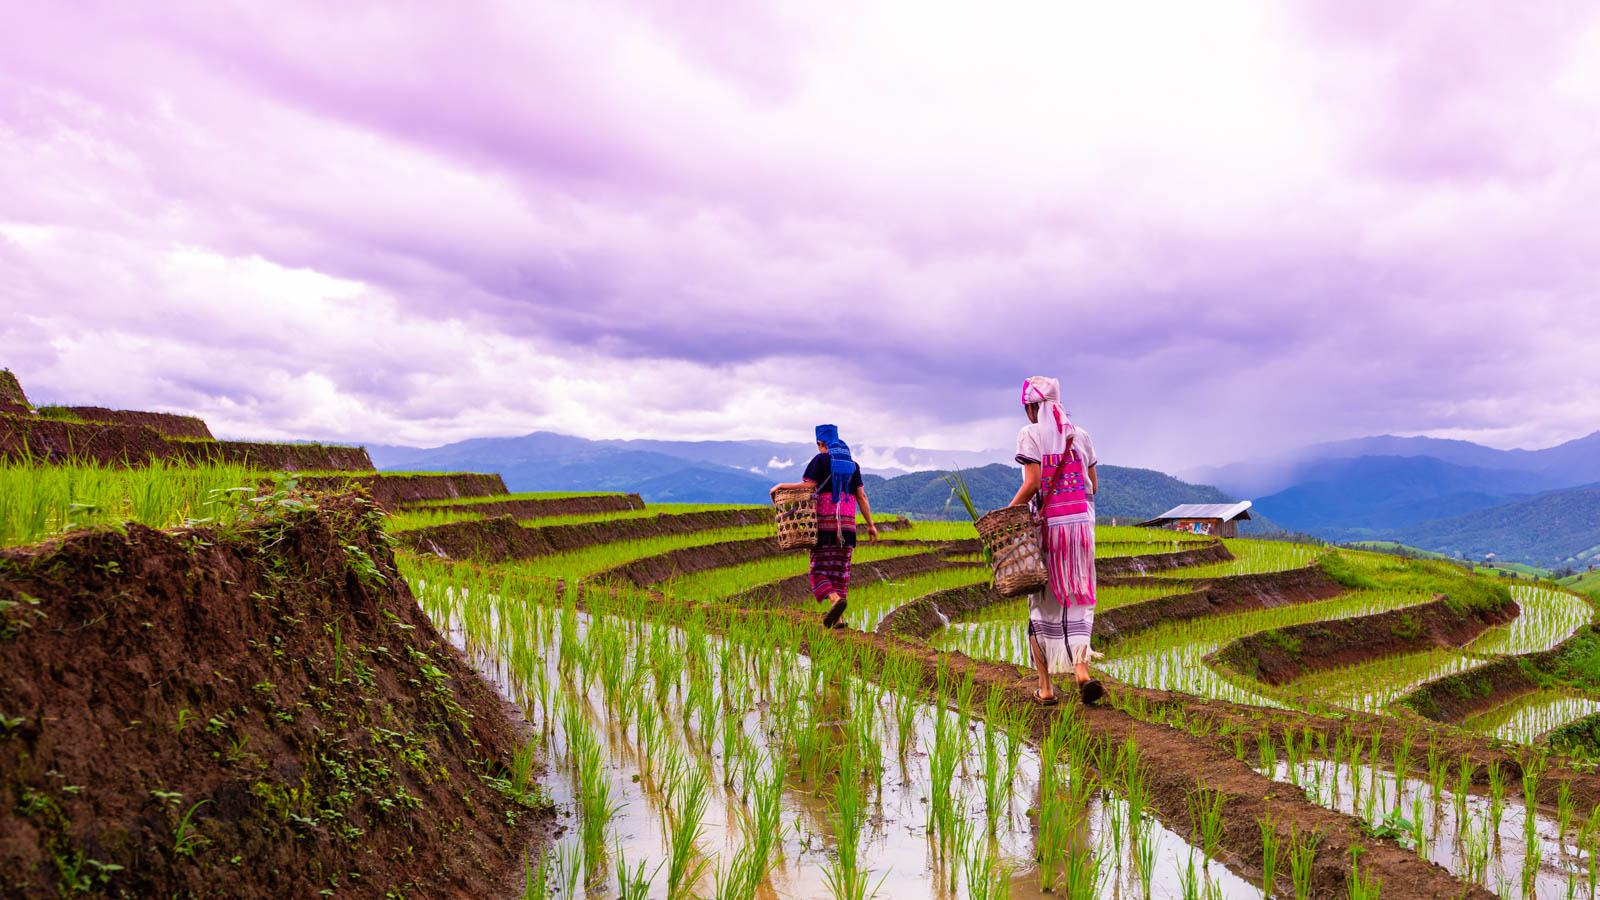 Thai rice fields